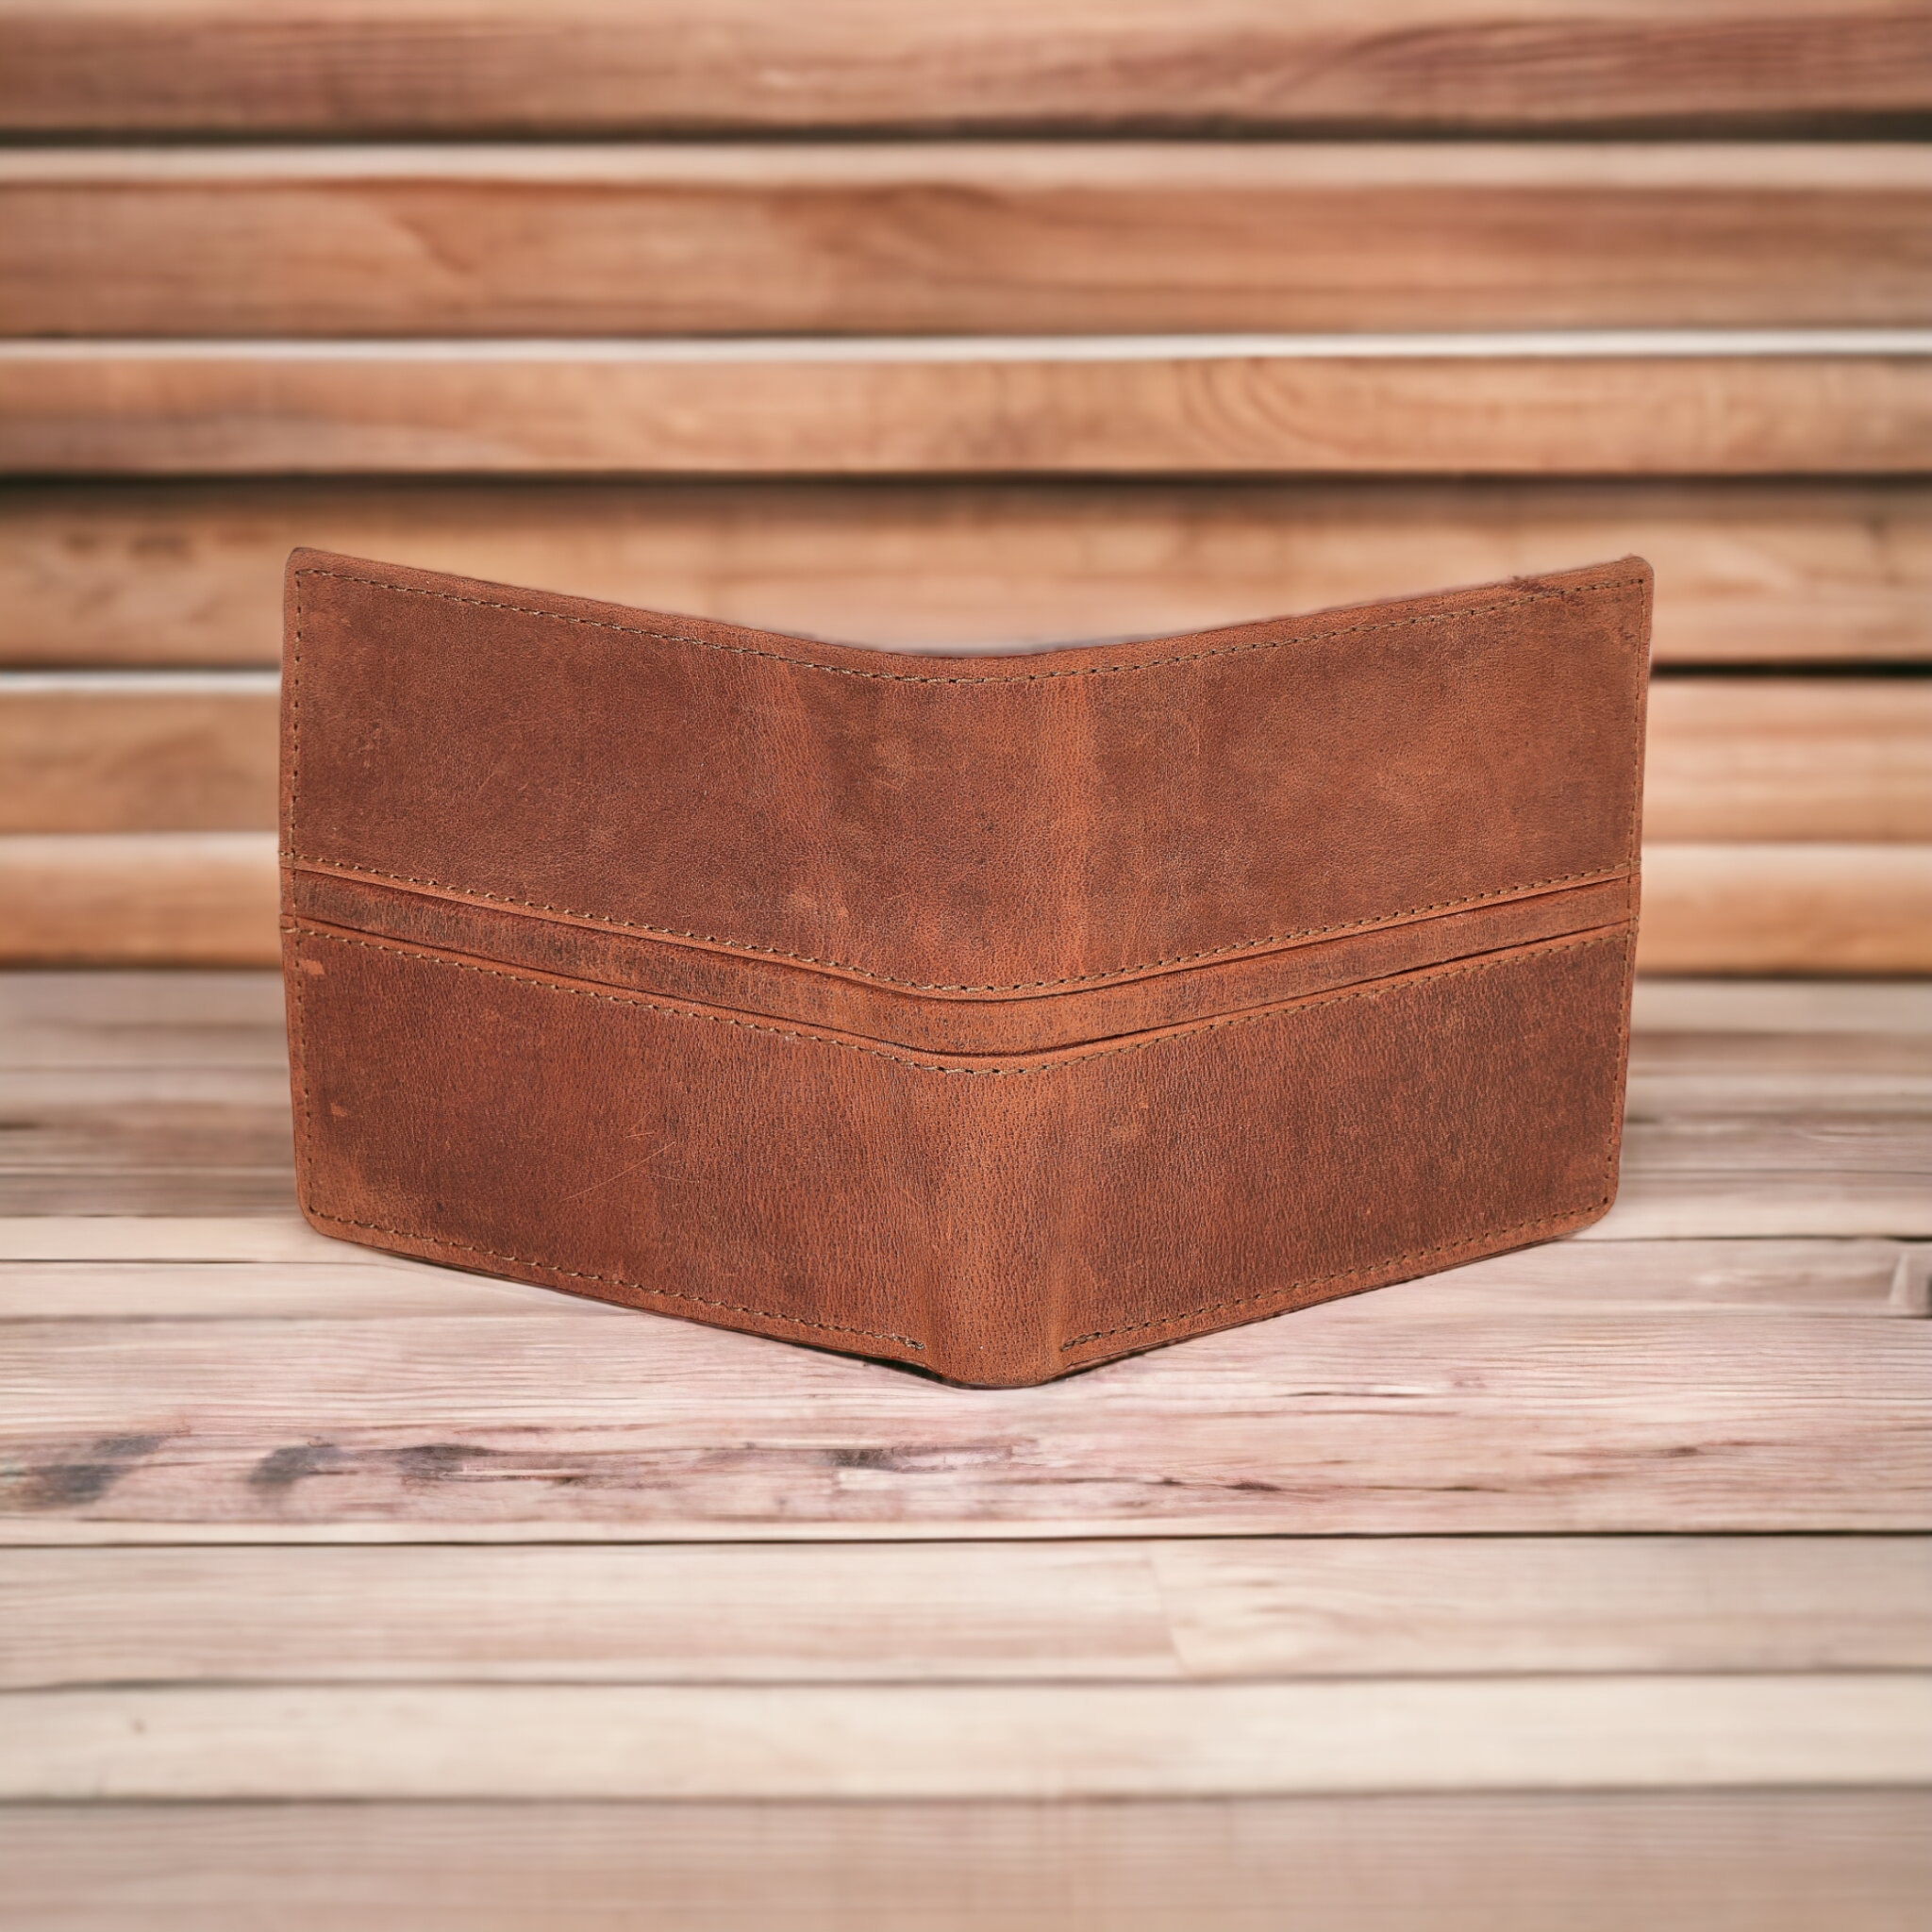 Chiemsee Hirsch Leather Men's Wallet Briefcase Wallet Purse Wallet | eBay